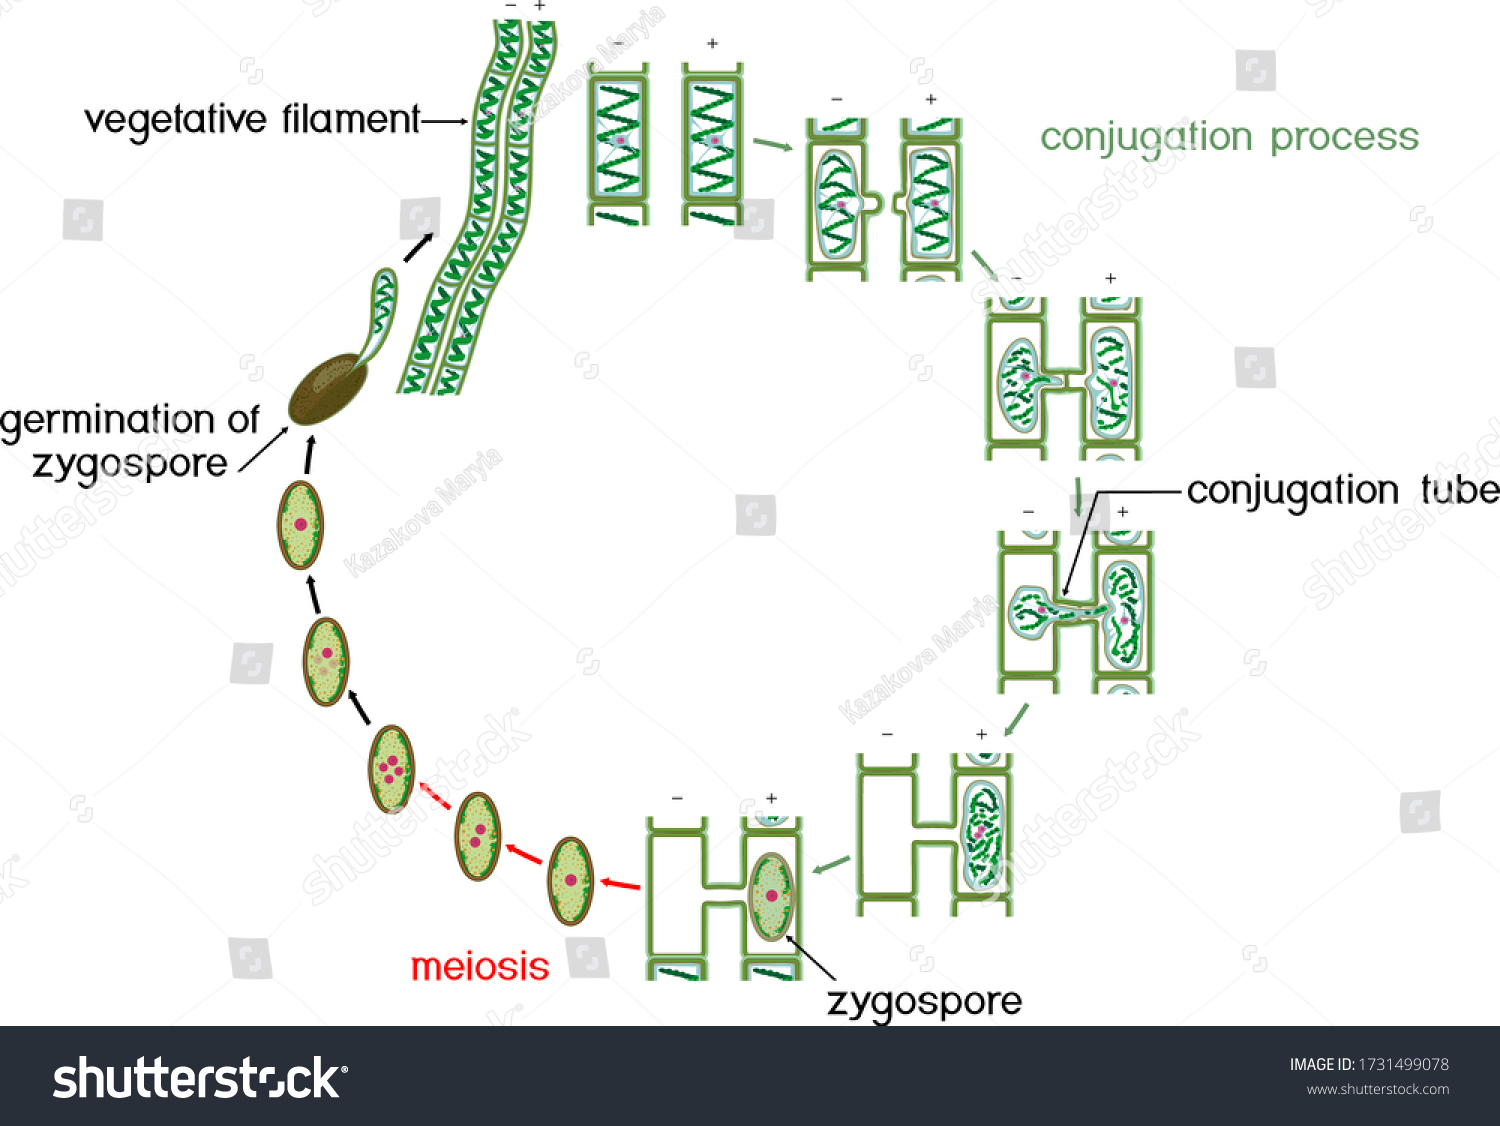 Цикл спирогиры. Цикл развития спирогиры. Спирогира водоросль размножение. Жизненный цикл спирогиры схема. Конъюгация водоросли спирогиры.